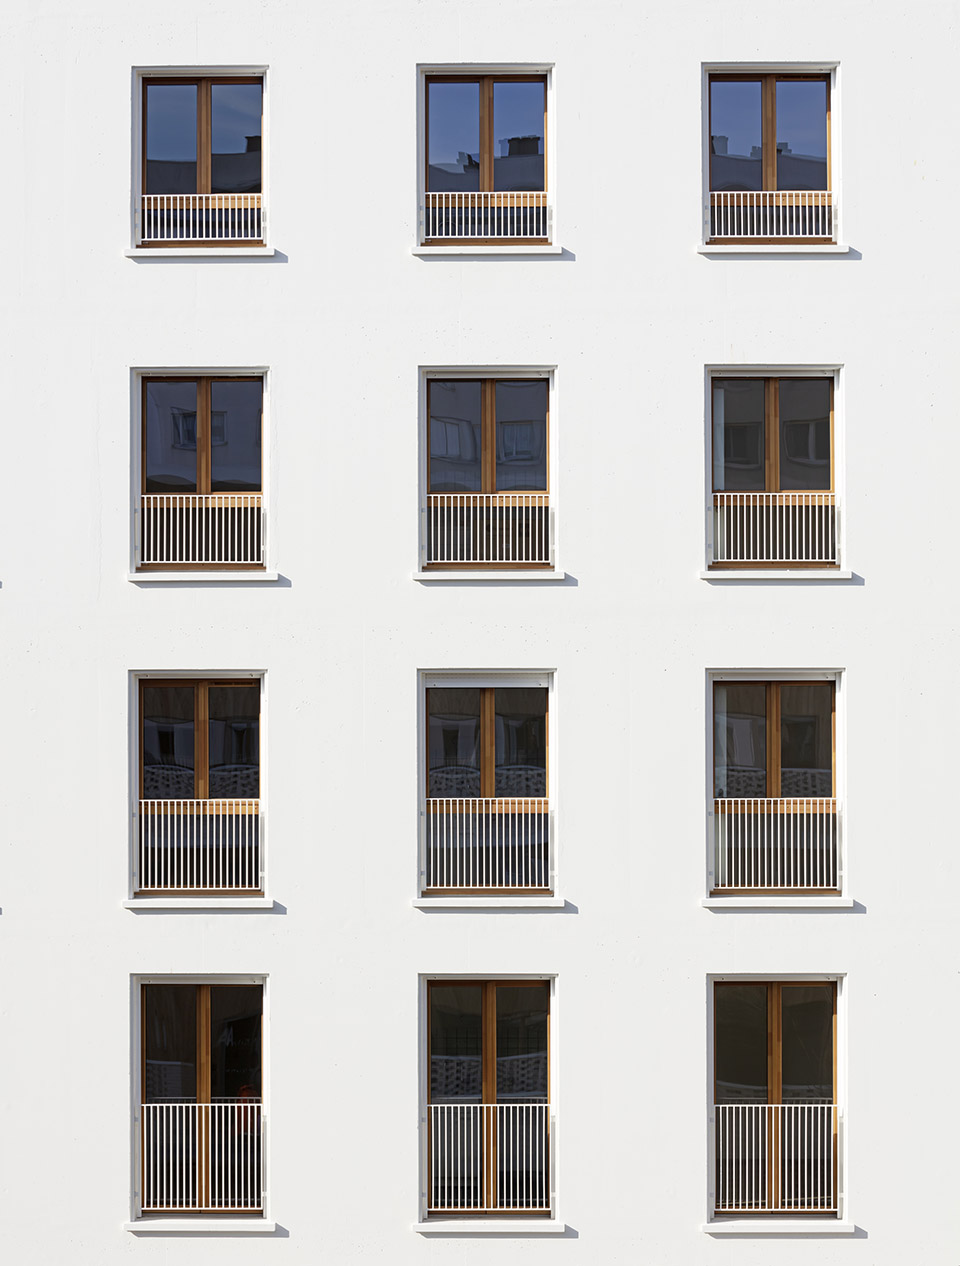 71社会住宅群，巴黎/多样化的居住空间和社区生活-47